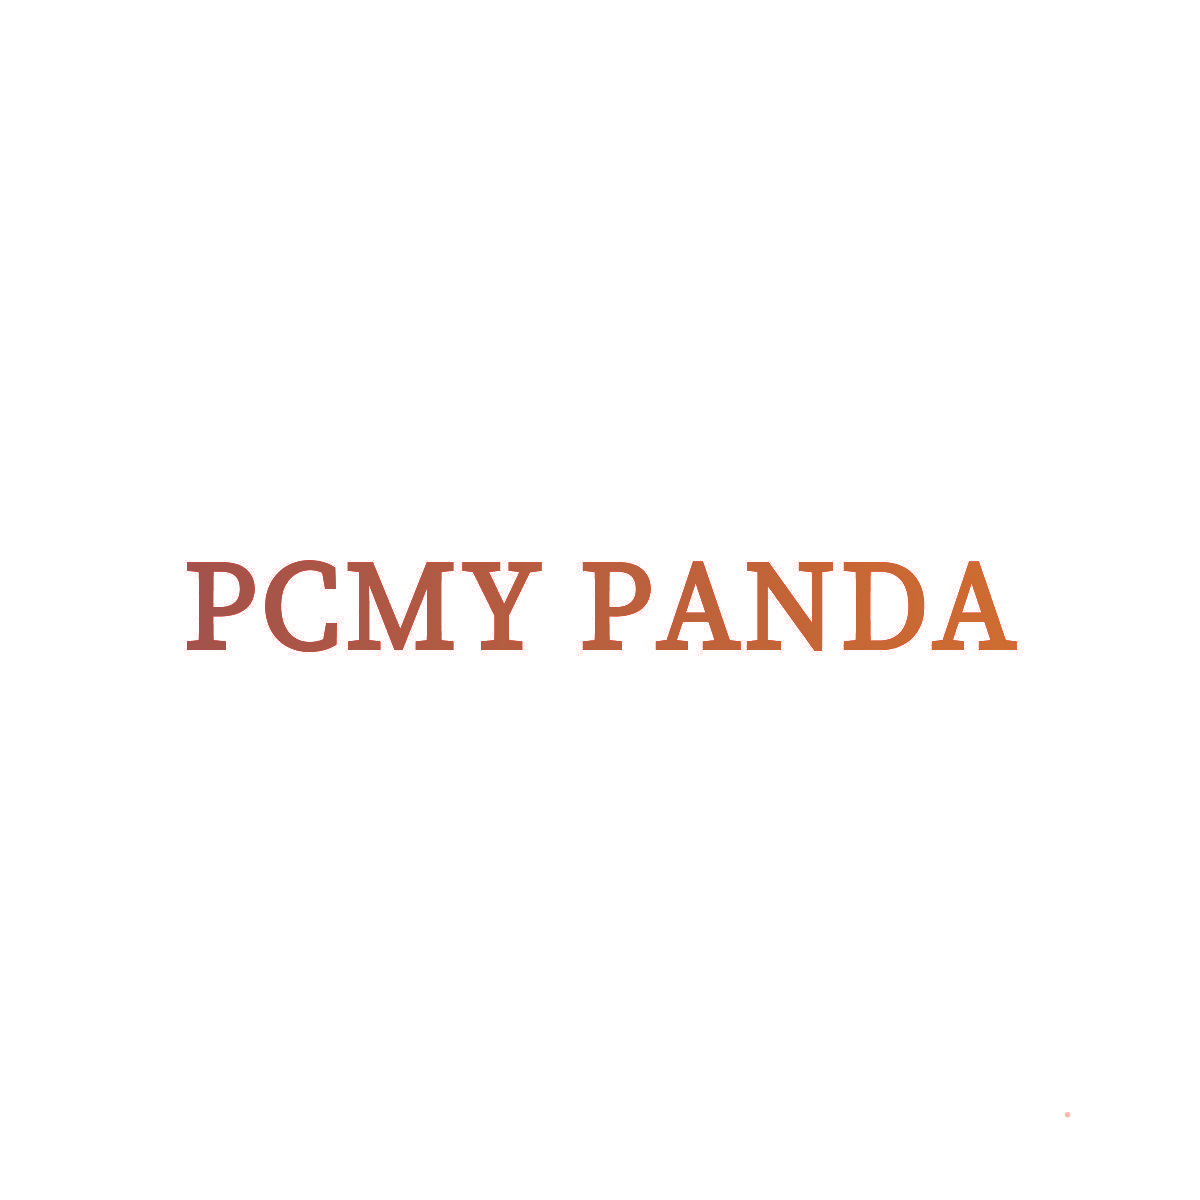 PCMY PANDA